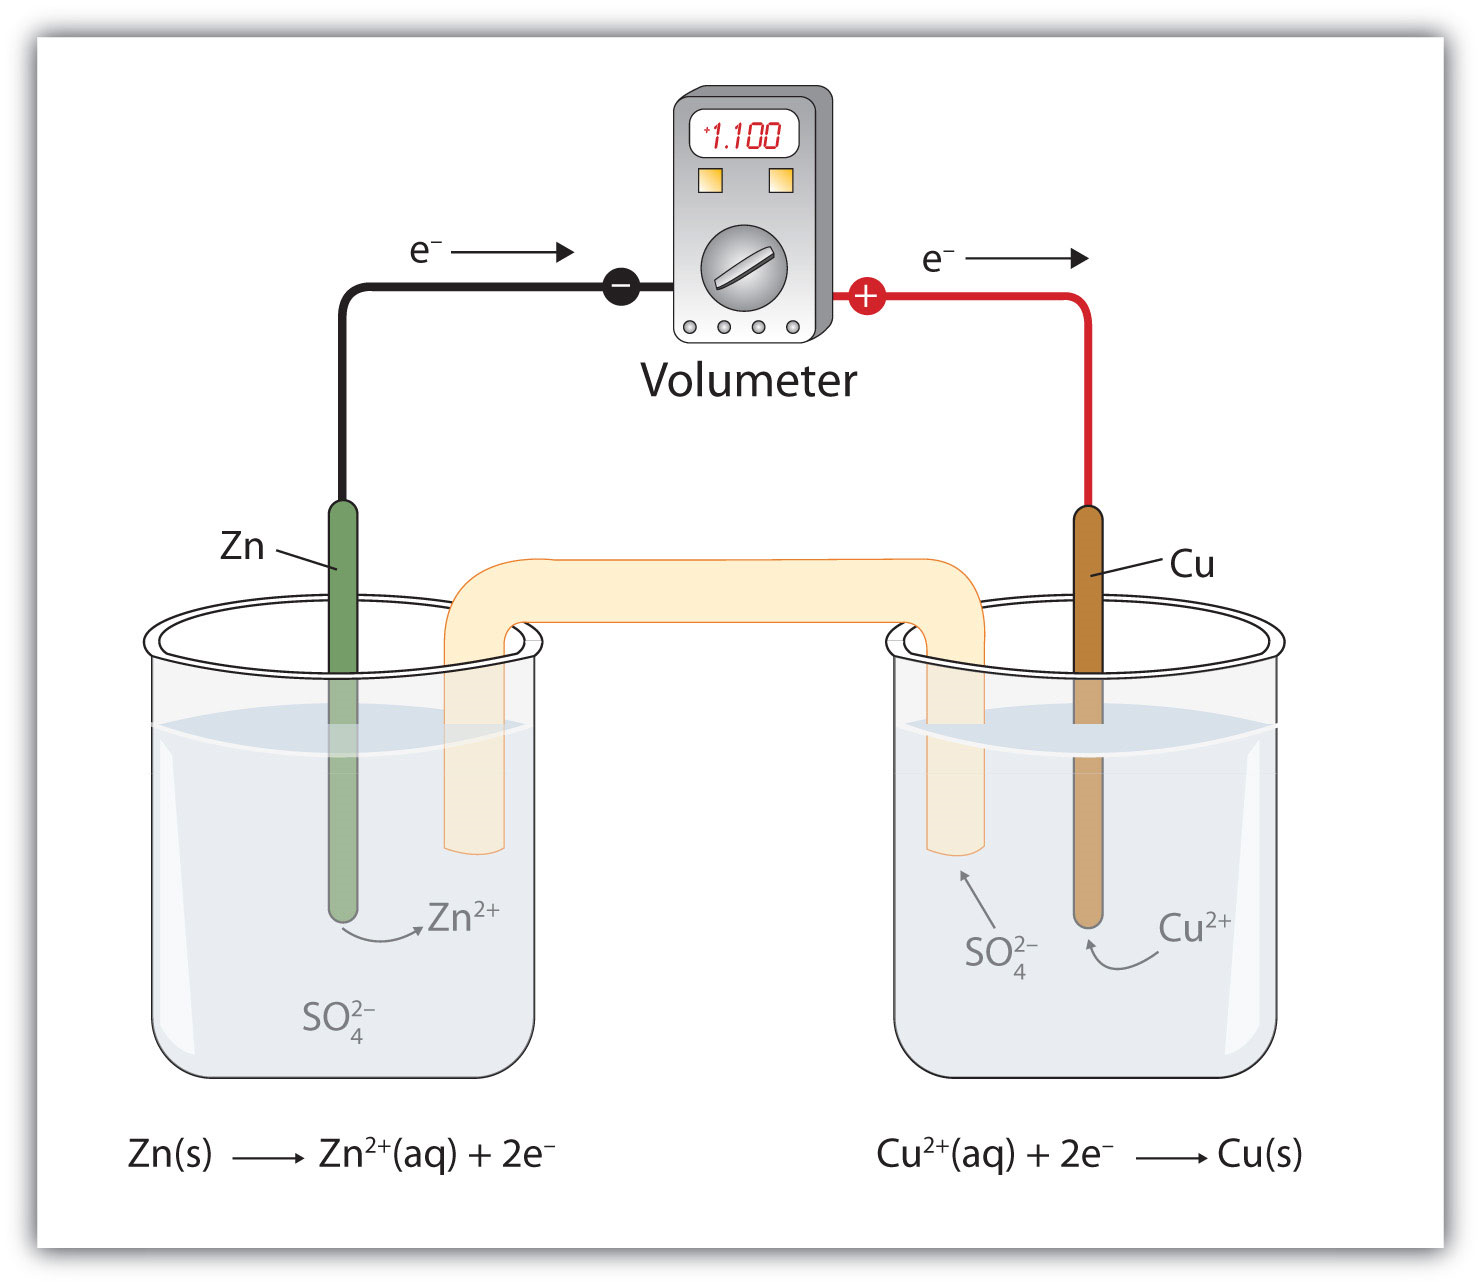 La reacción se produce en dos vasos de precipitados que están conectados por un puente salino y un volúmetro.